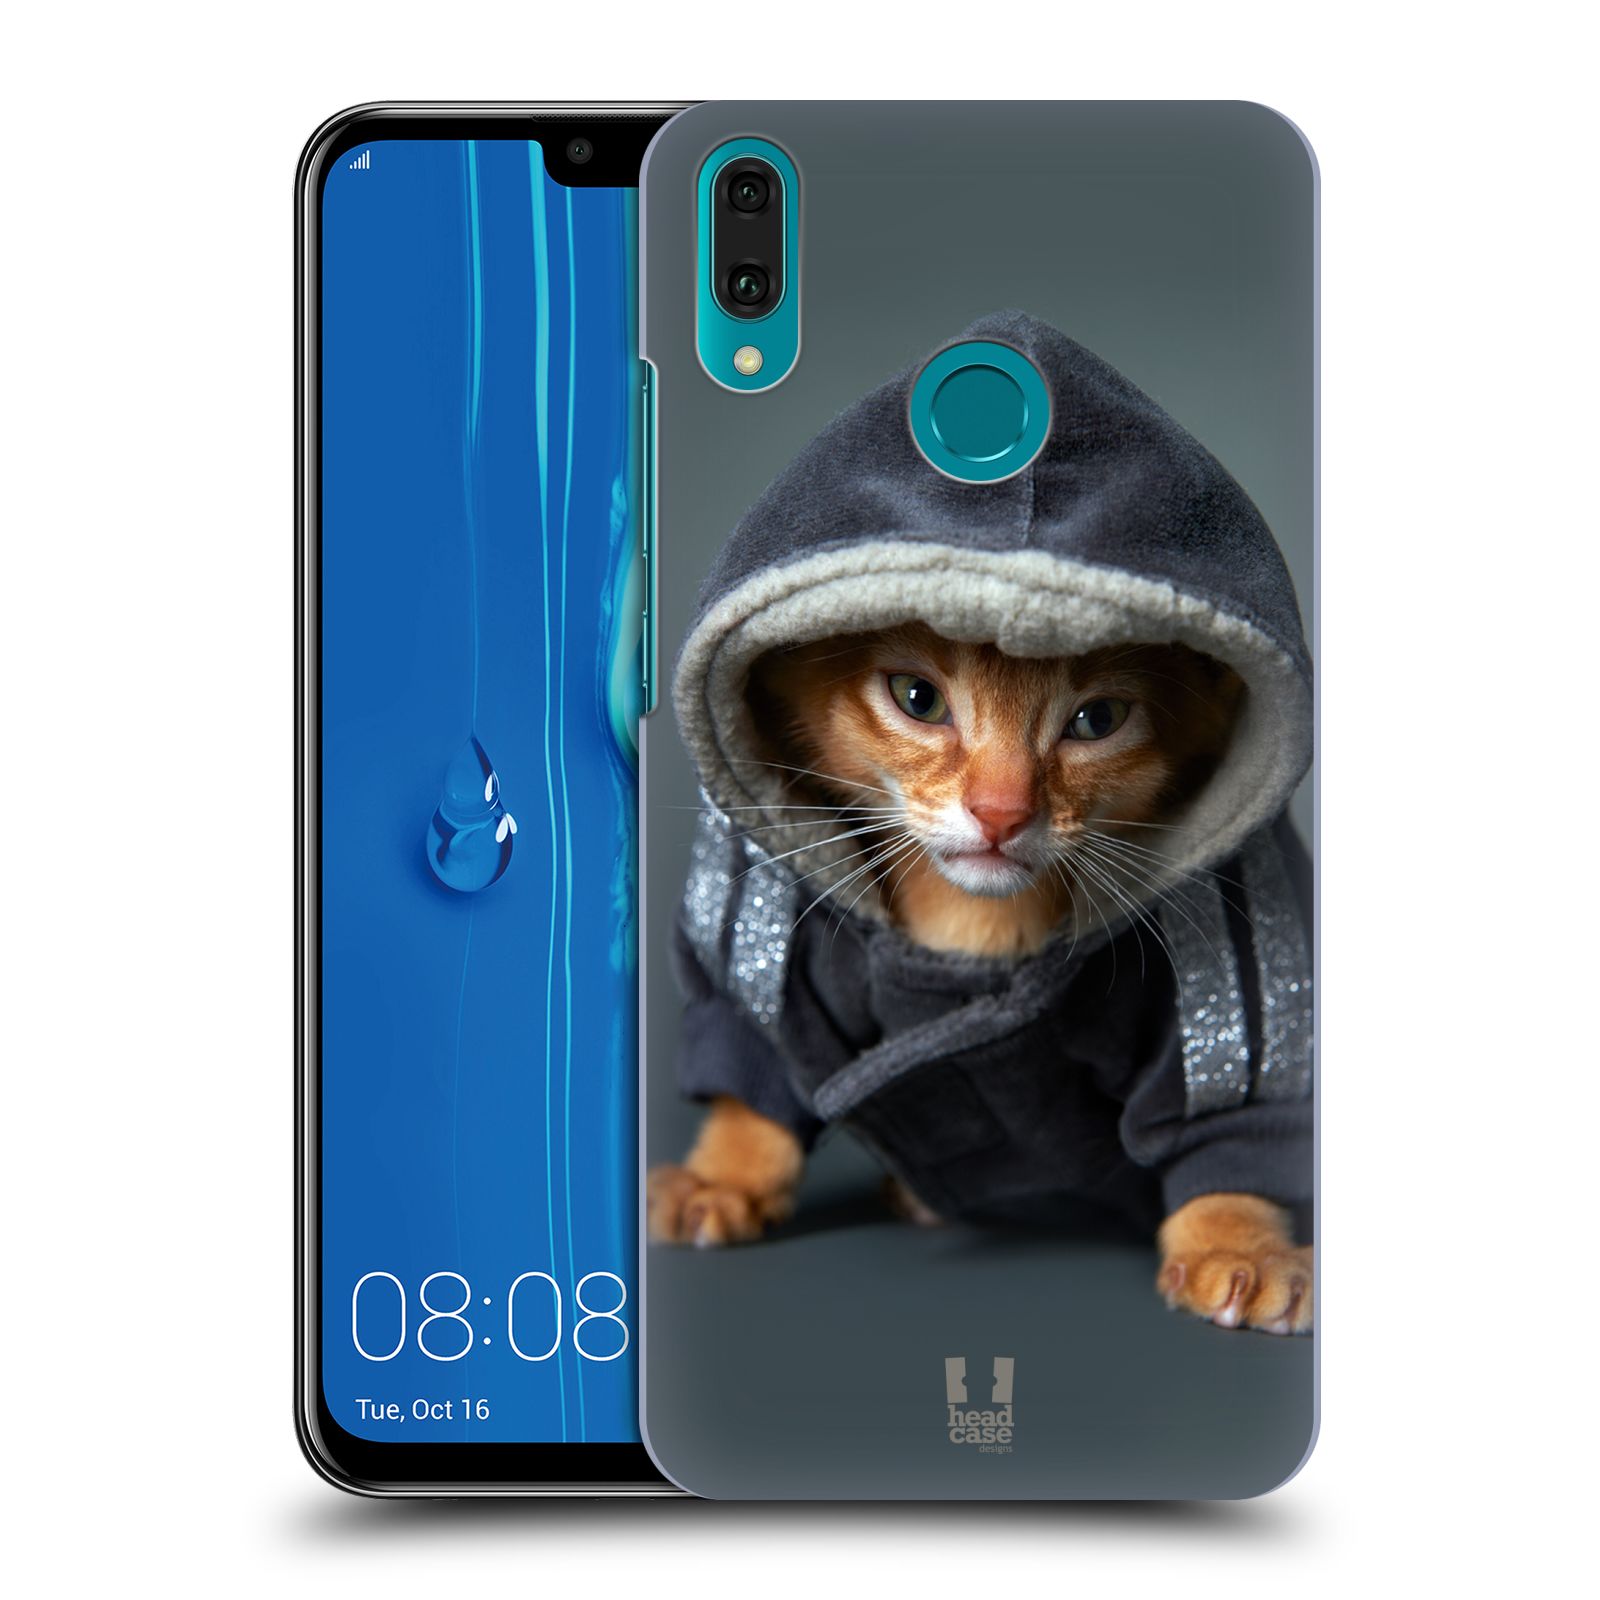 Pouzdro na mobil Huawei Y9 2019 - HEAD CASE - vzor Legrační zvířátka kotě/kočička s kapucí